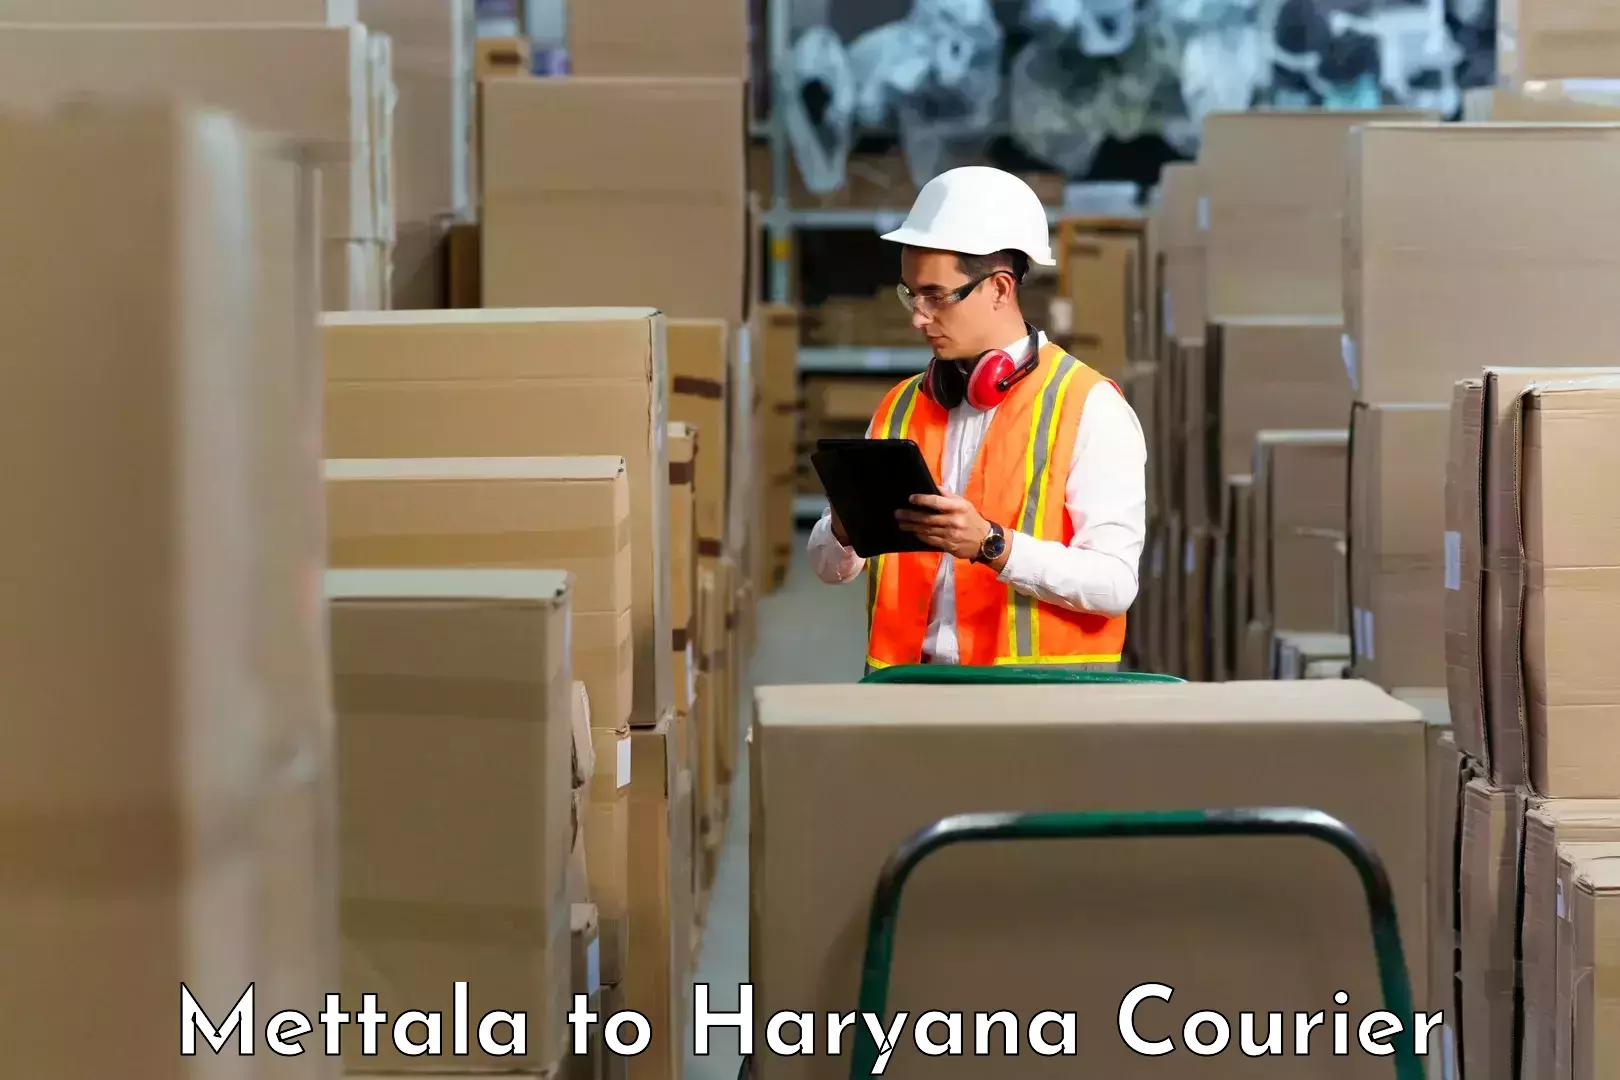 Smart shipping technology Mettala to Budha Khera